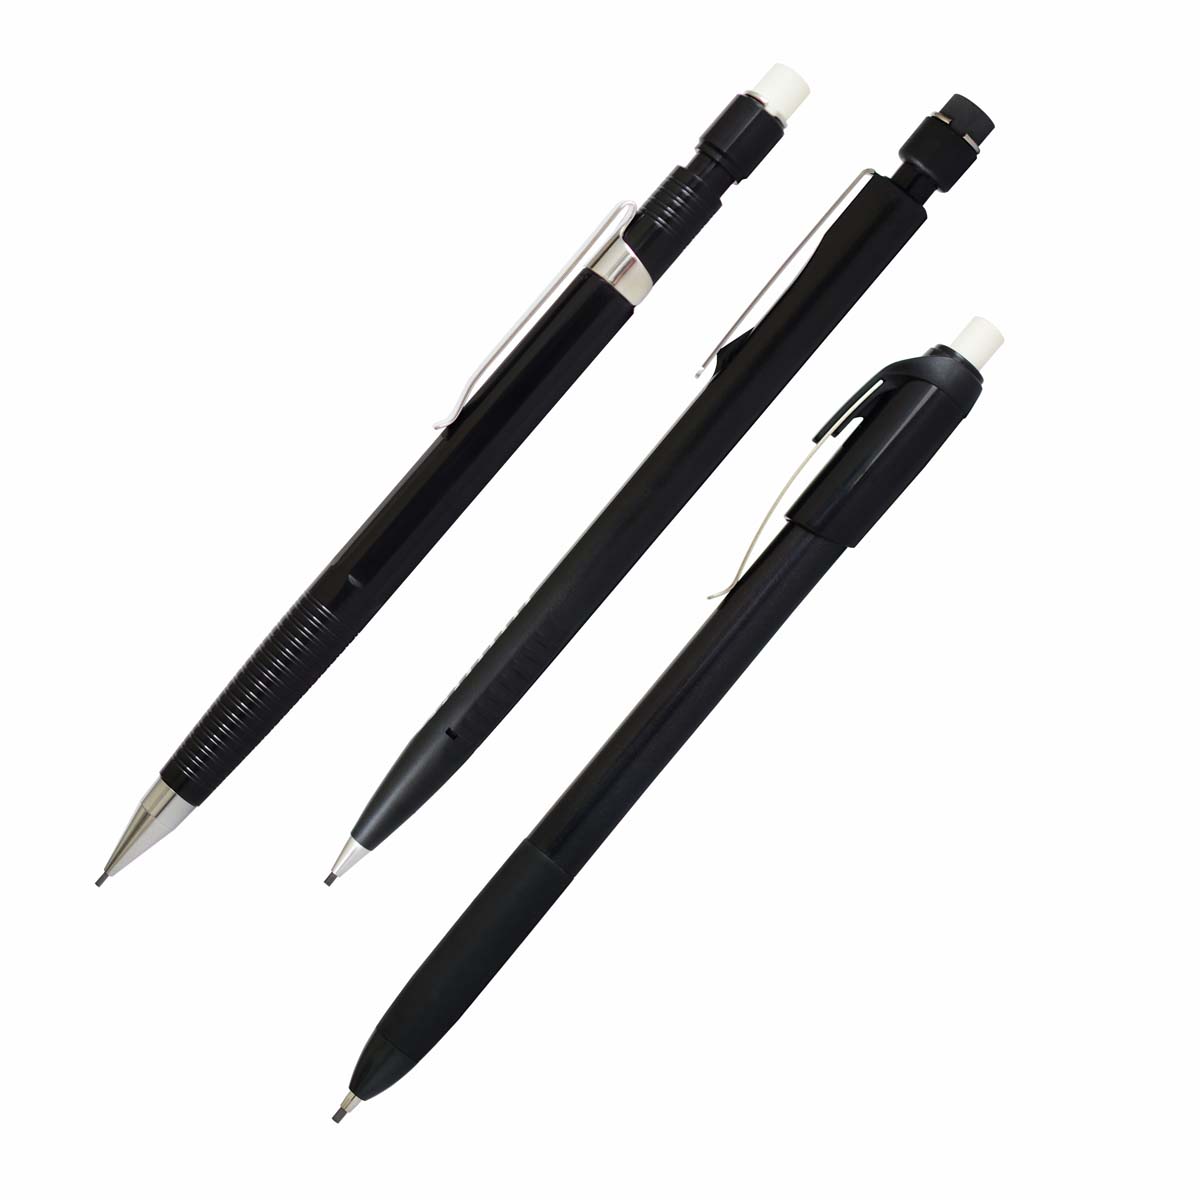 Yasutomo Mechanical Pencils & Refills